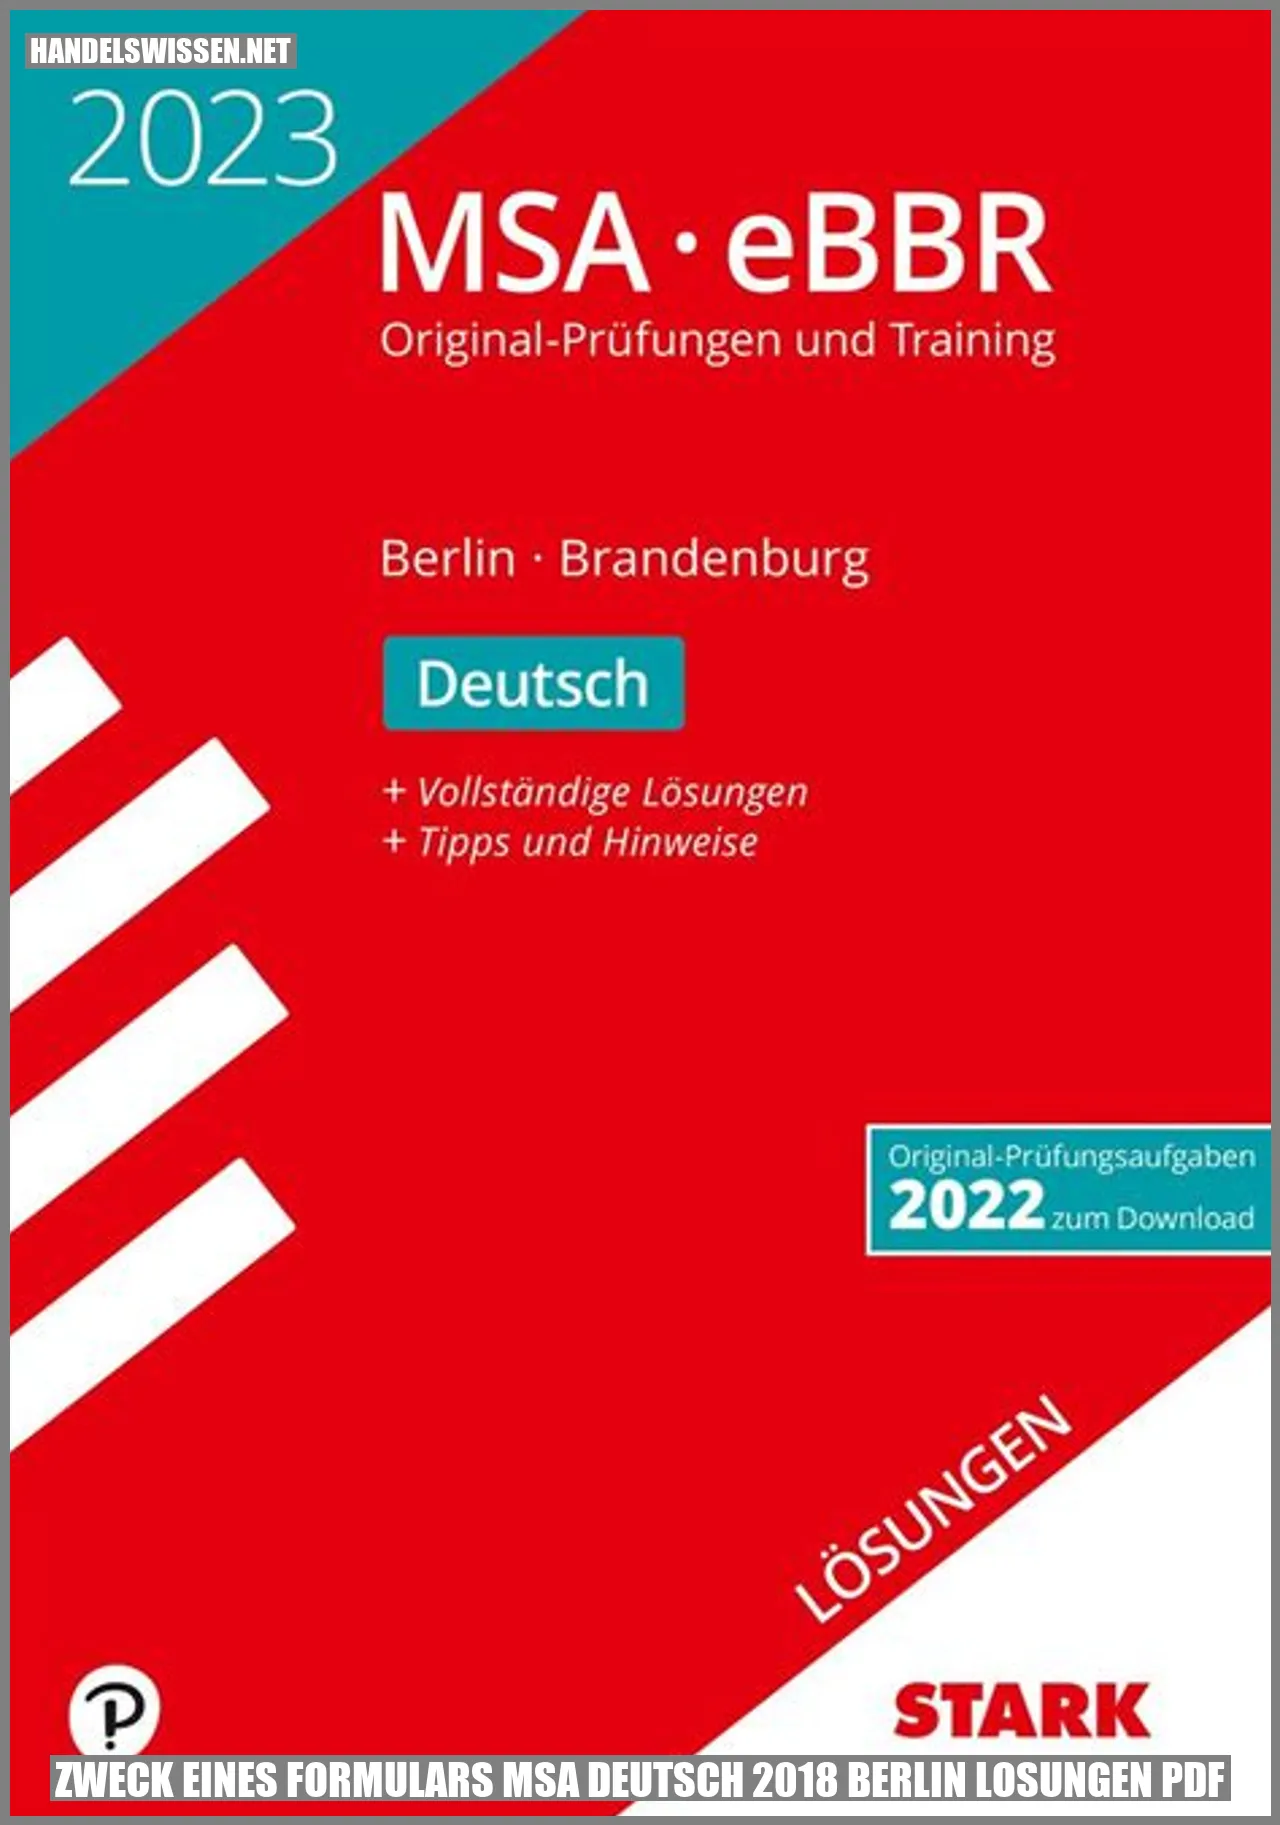 Zweck eines Formulars MSA Deutsch 2018 Berlin Lösungen PDF